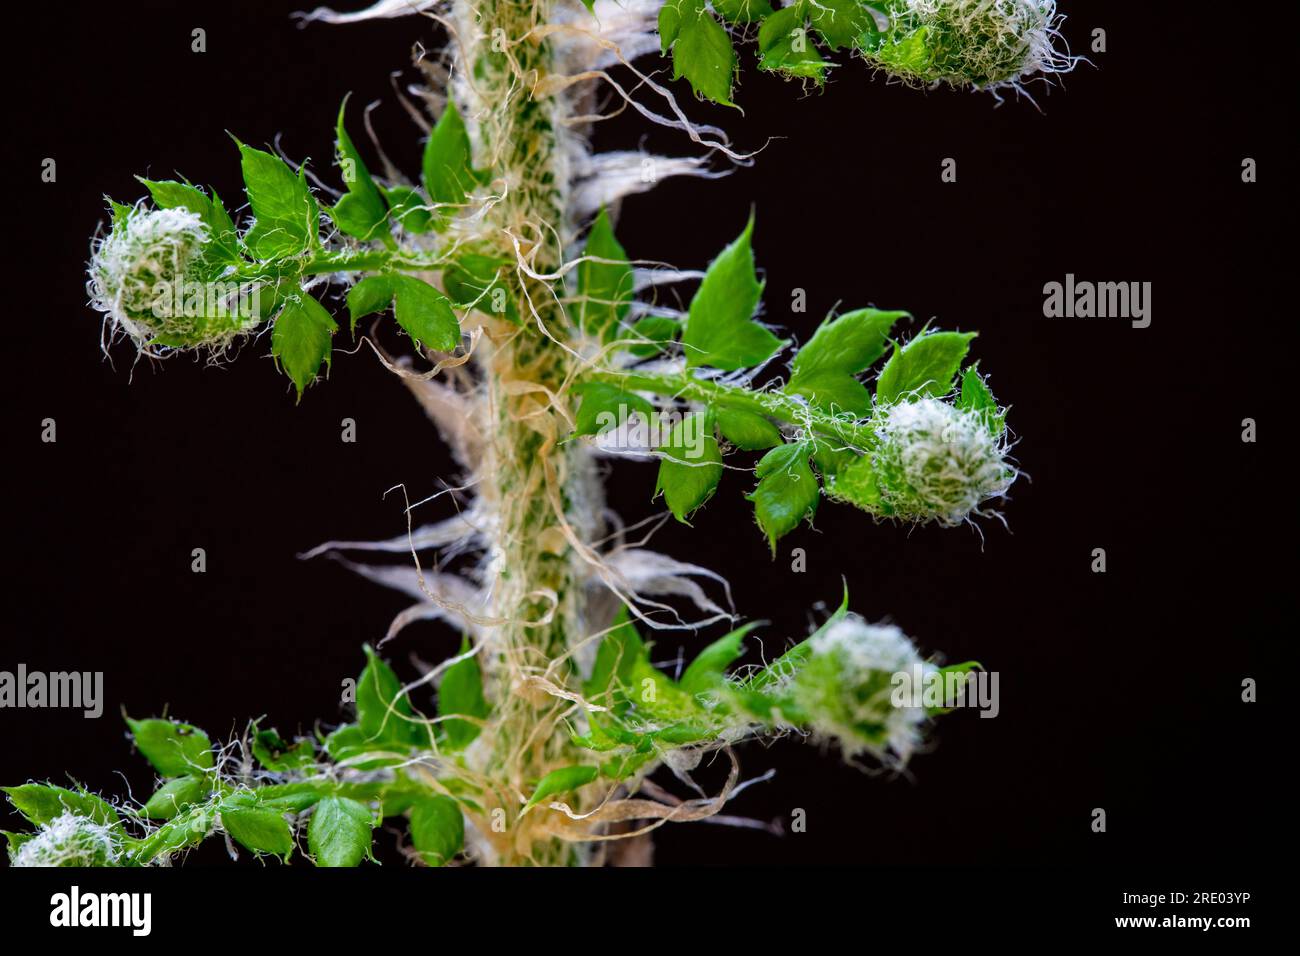 Fougère douce (Polystichum setiferum), jeune feuille en développement sur fond noir, pays-Bas Banque D'Images